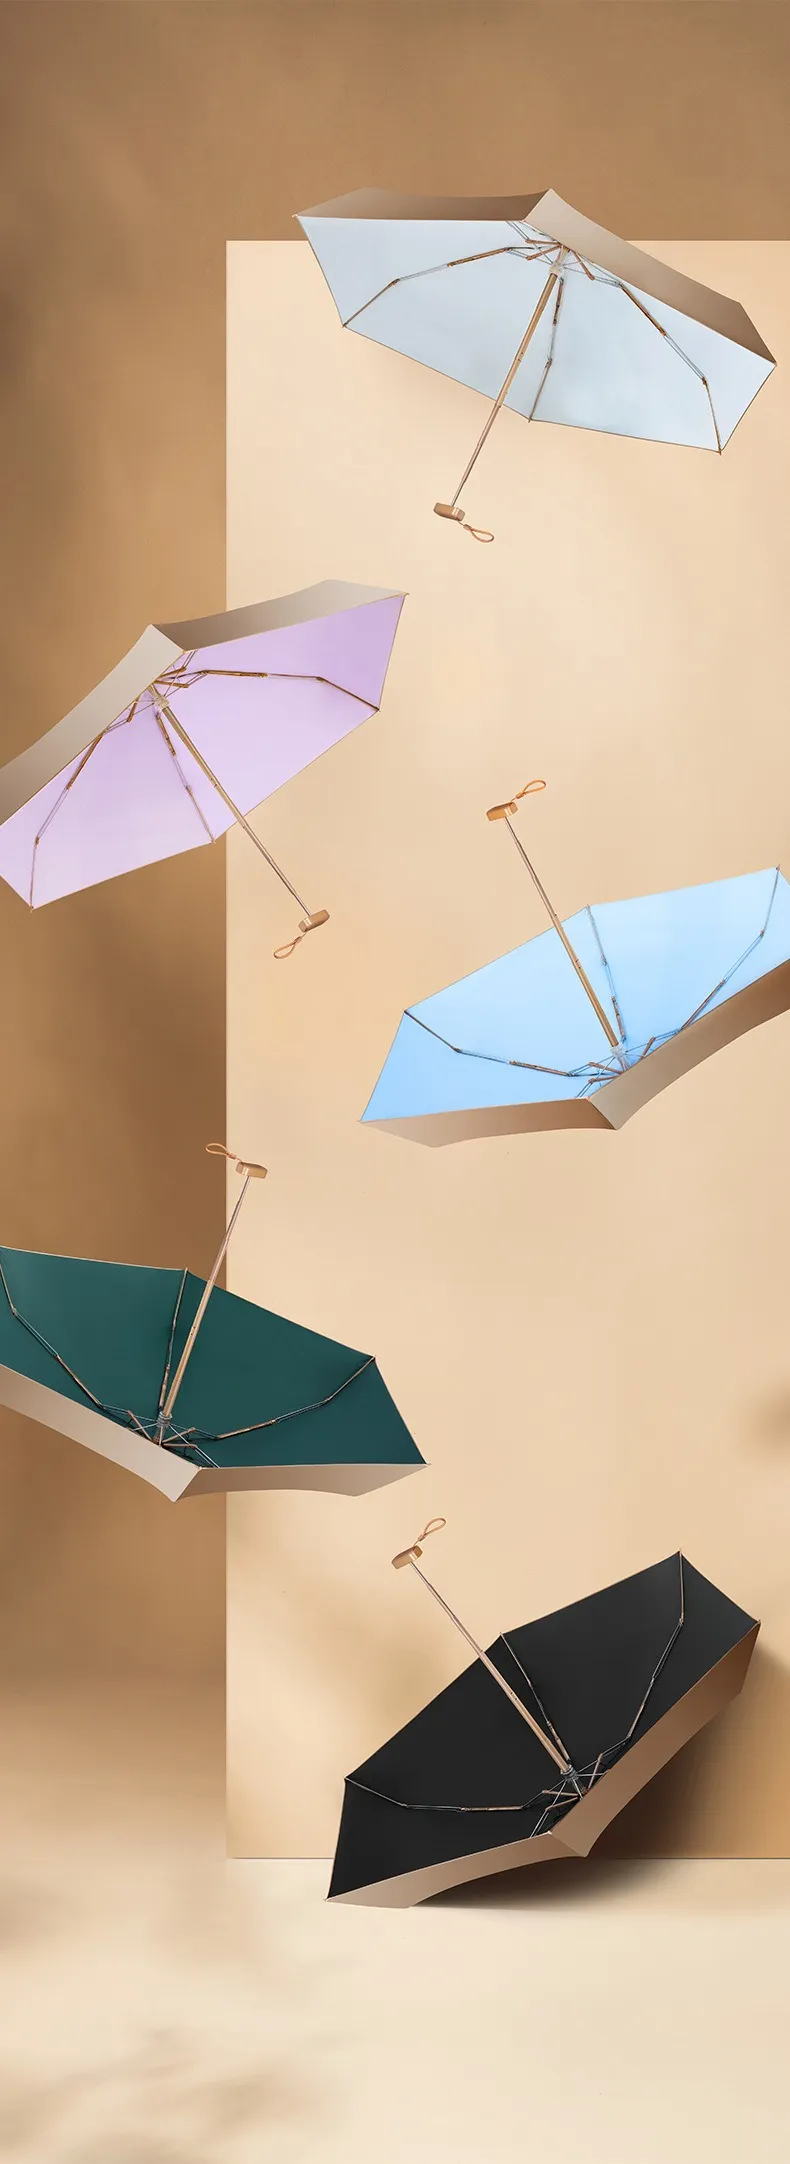 Ombrello tascabile il giorno piovoso Mini ombrelli pieghevoli Ombrellone da uomo Mini pieghevole da donna Regali Abbigliamento antipioggia da viaggio